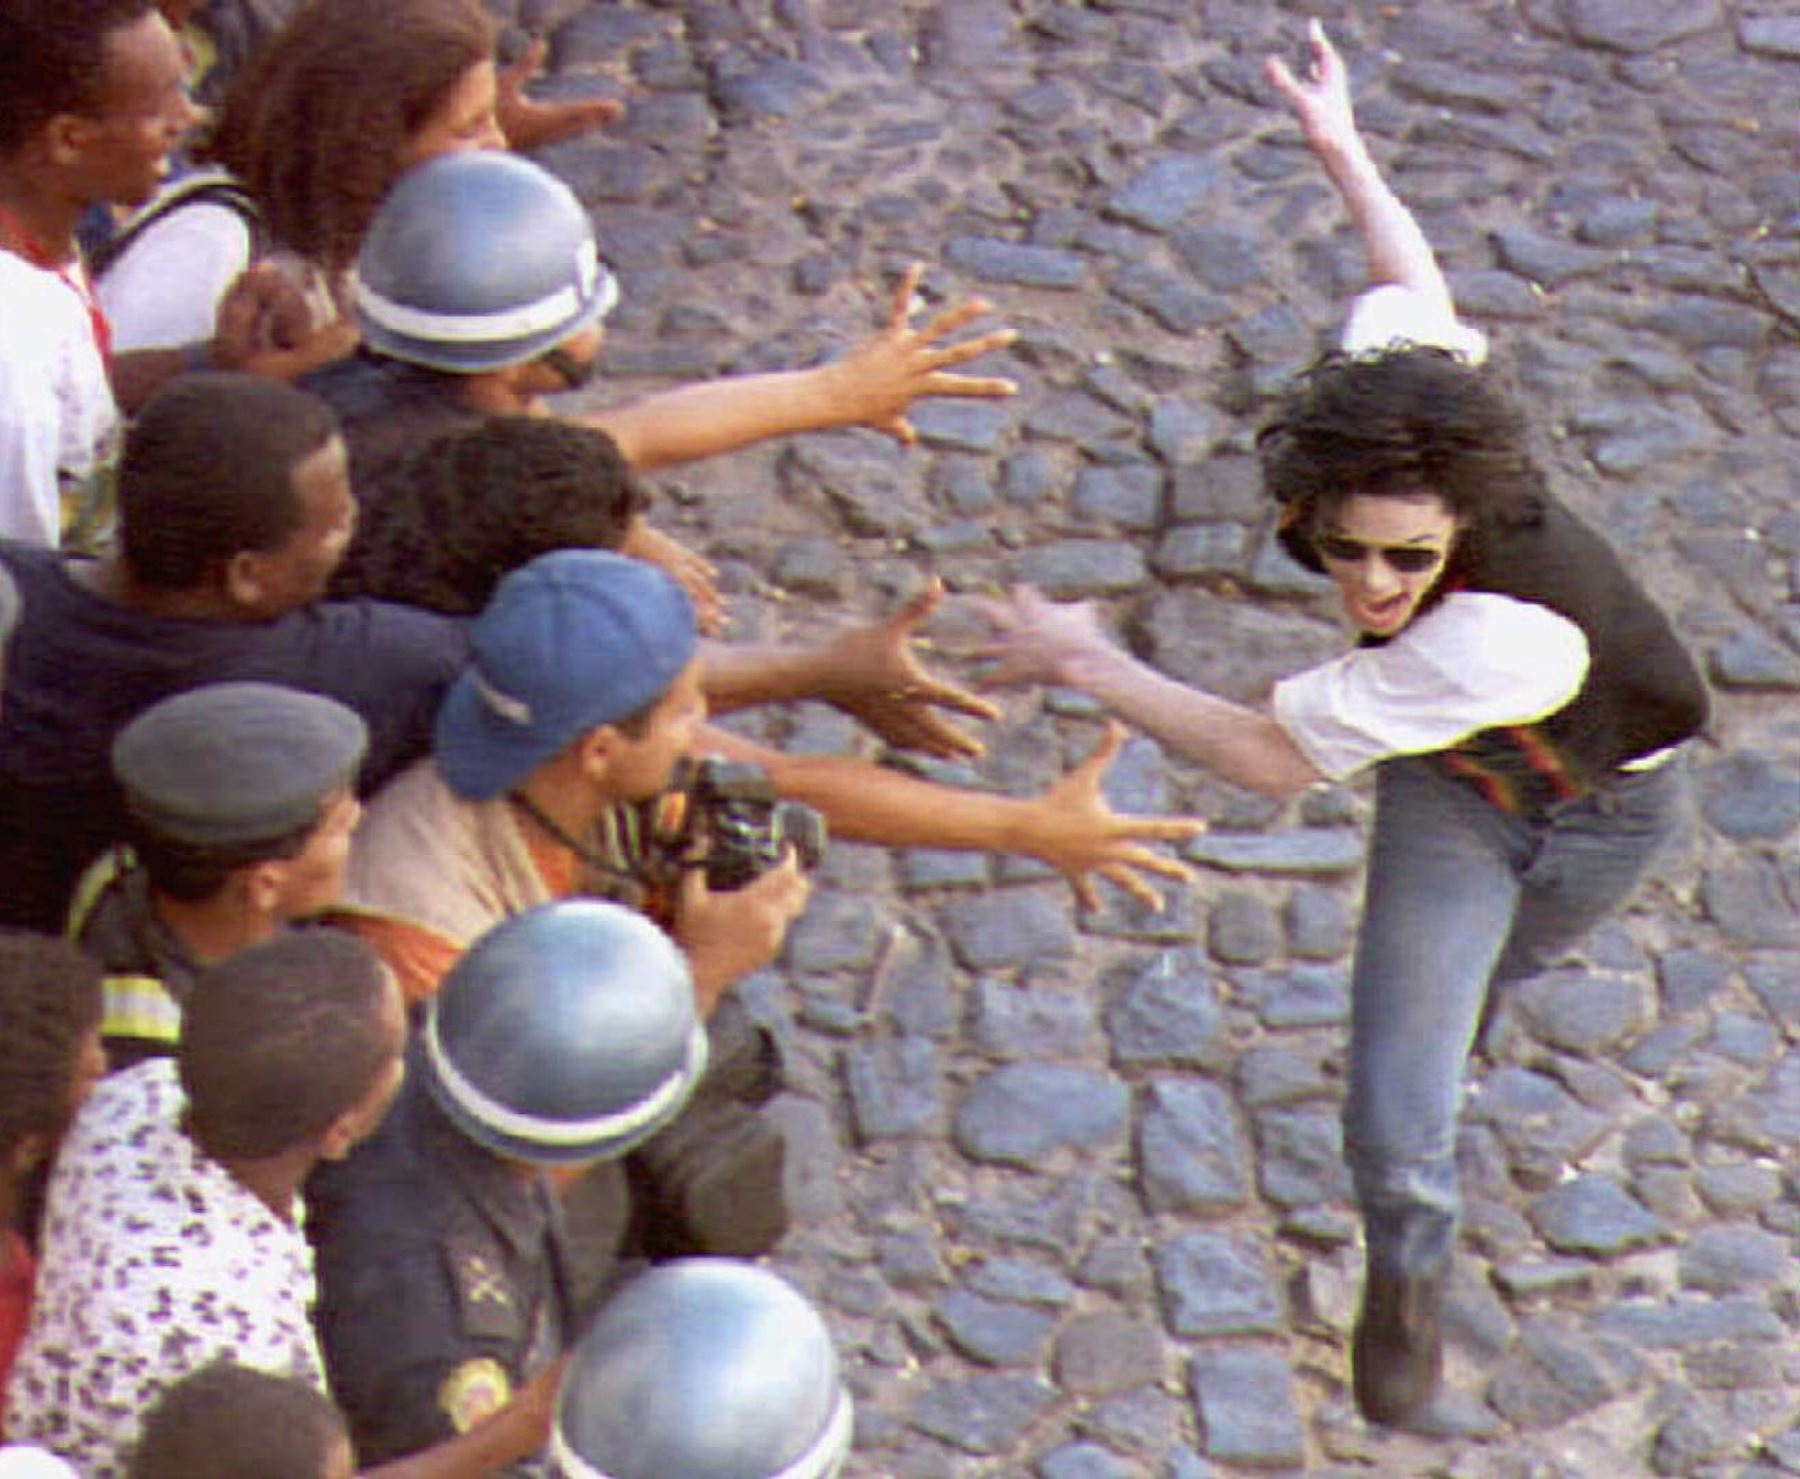 esta foto de archivo del 10 de febrero de 1996 muestra a los fanáticos brasileños acercándose para tocar a la estrella pop estadounidense Michael Jackson durante el rodaje del nuevo video de Jackson "No nos importan", en Salvador, Brasil. Foto: AFP